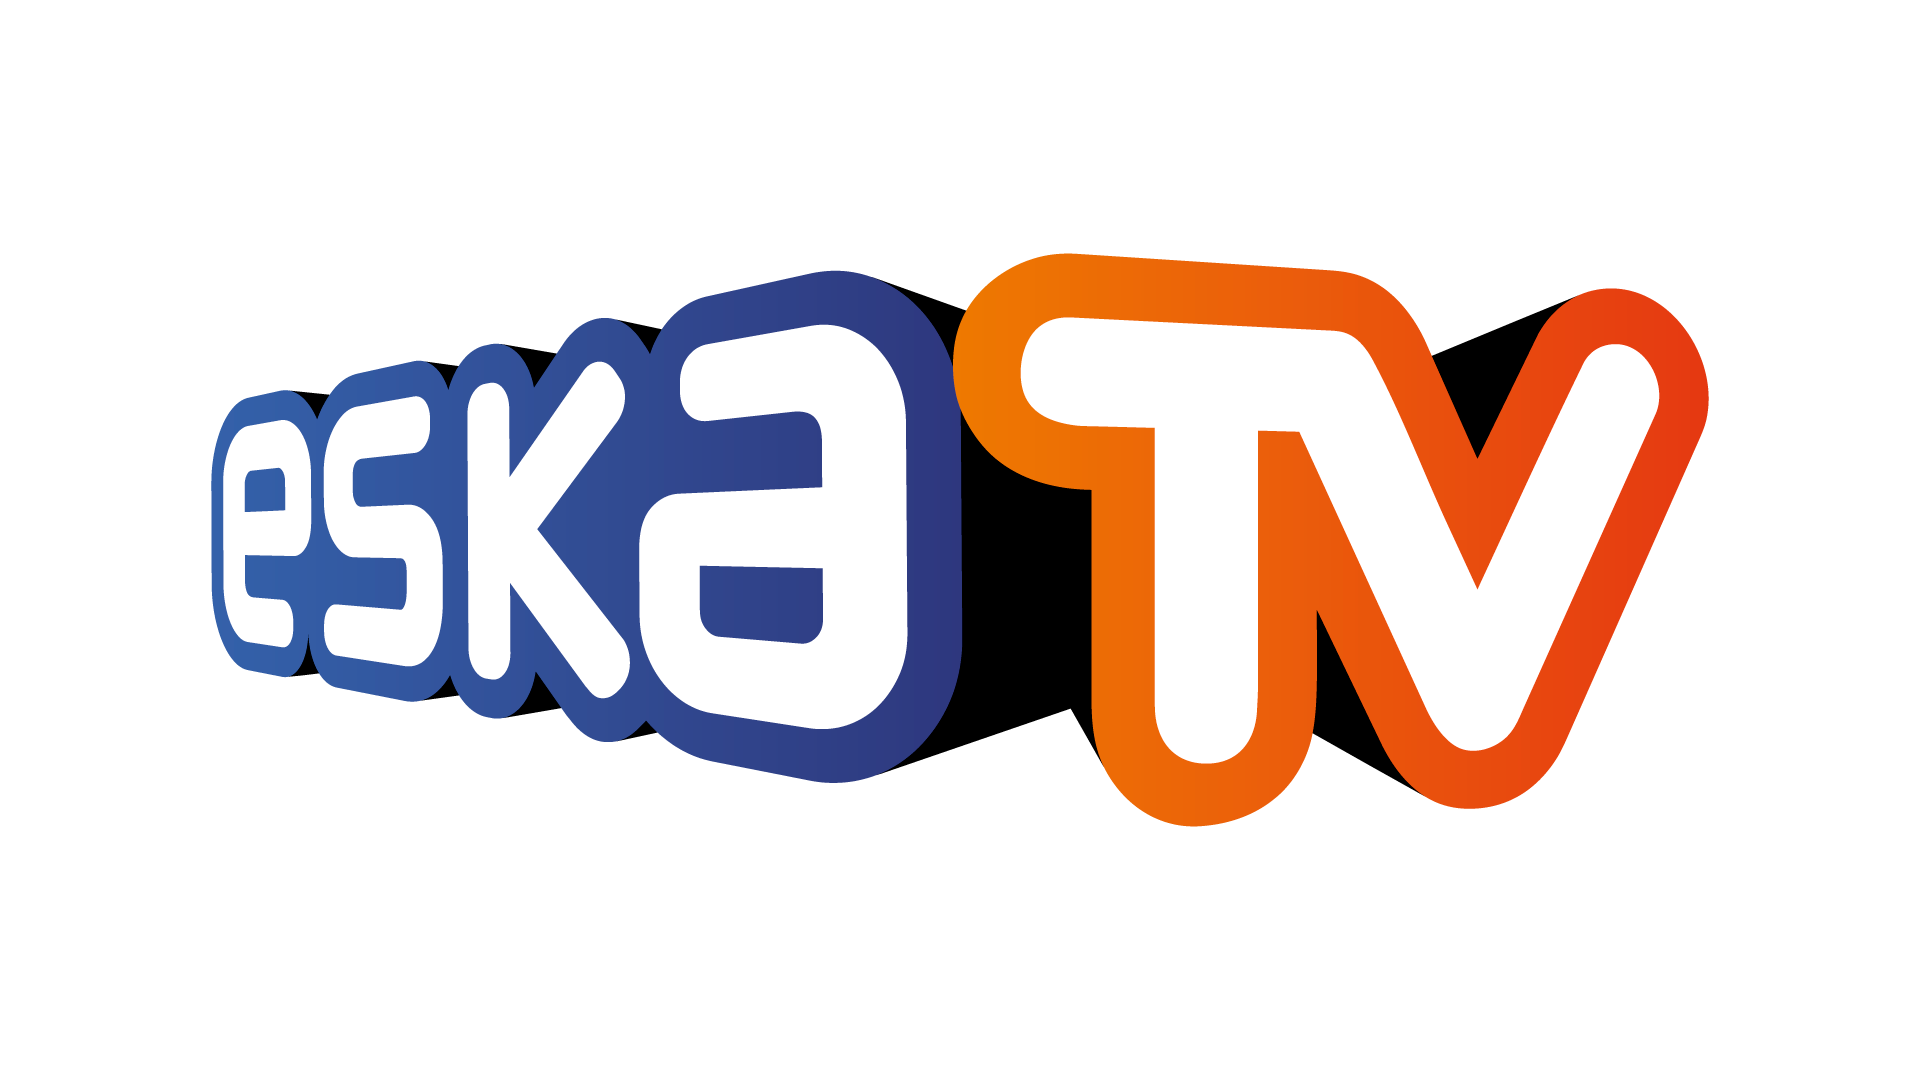 ESKA TV Live TV, Online